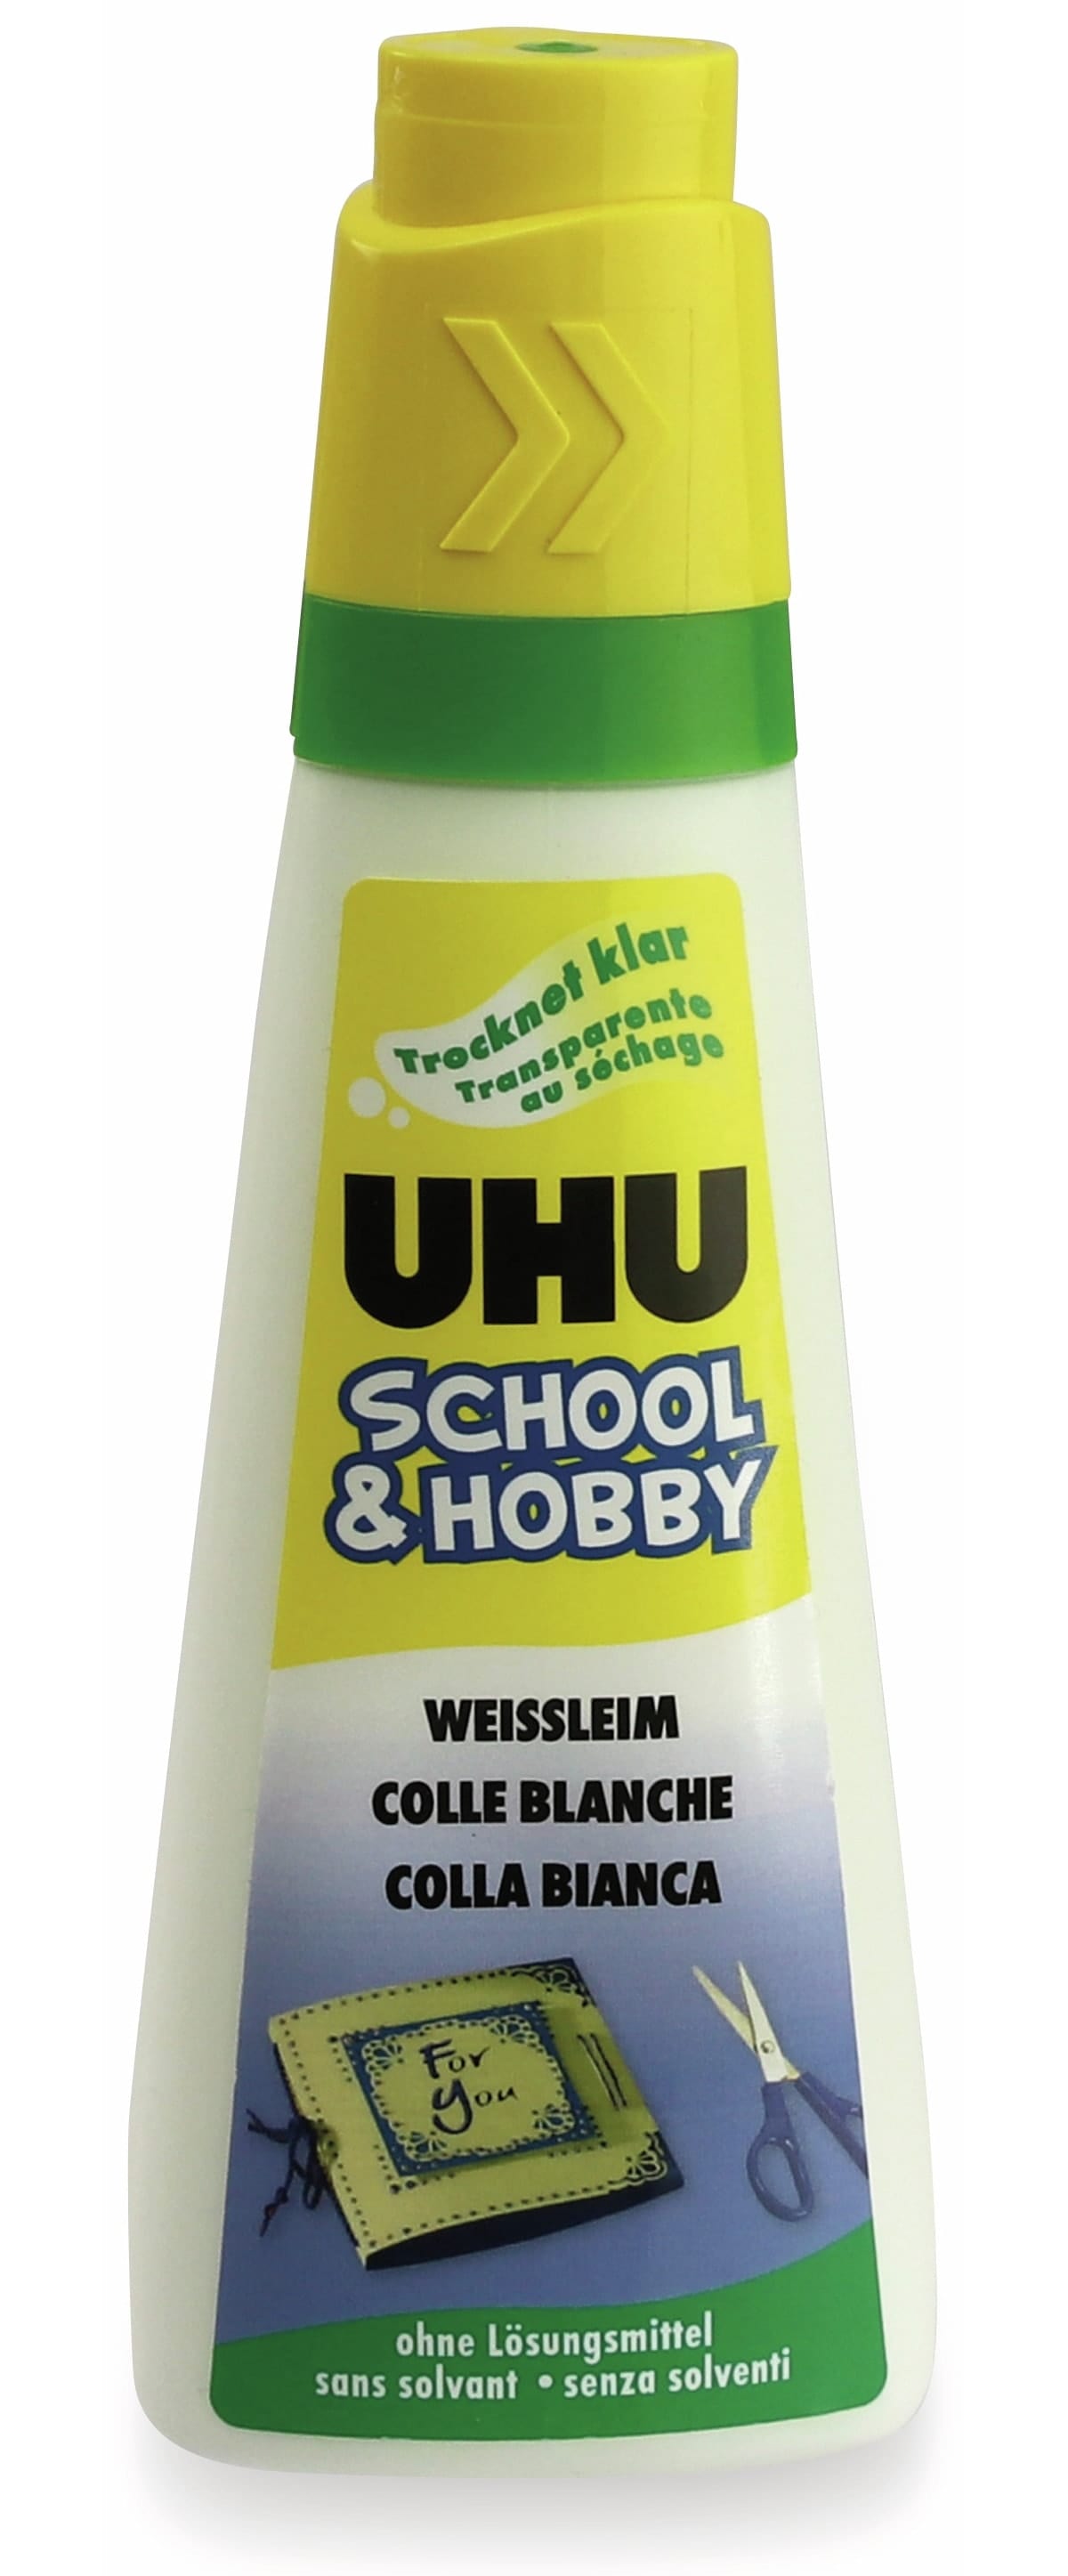 UHU Weissleim School & Hobby, 100 g, ohne Lösungsmittel